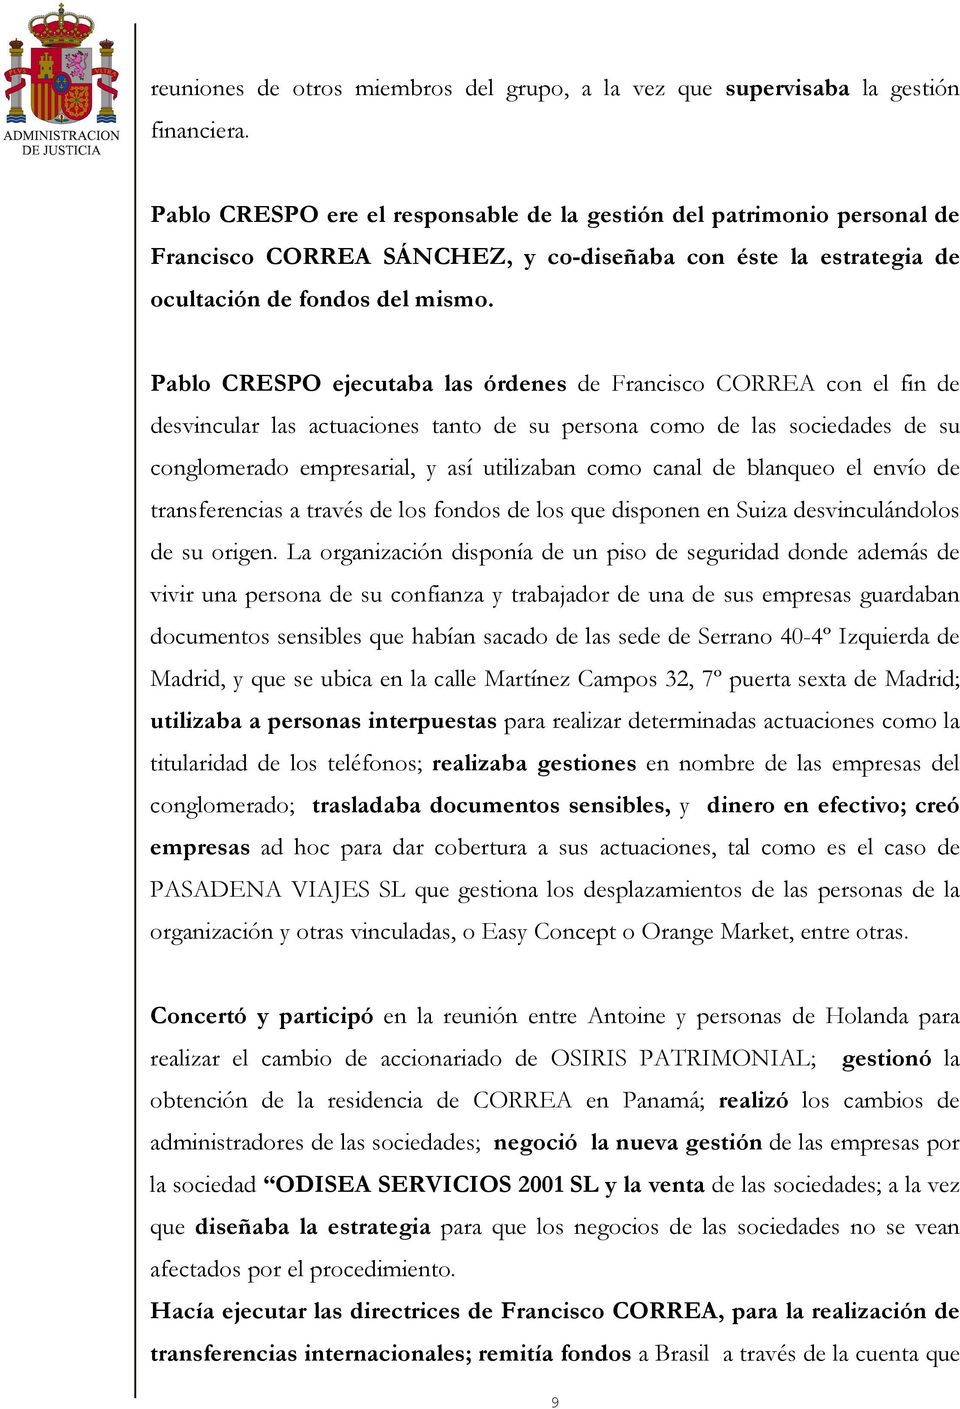 Pablo CRESPO ejecutaba las órdenes de Francisco CORREA con el fin de desvincular las actuaciones tanto de su persona como de las sociedades de su conglomerado empresarial, y así utilizaban como canal